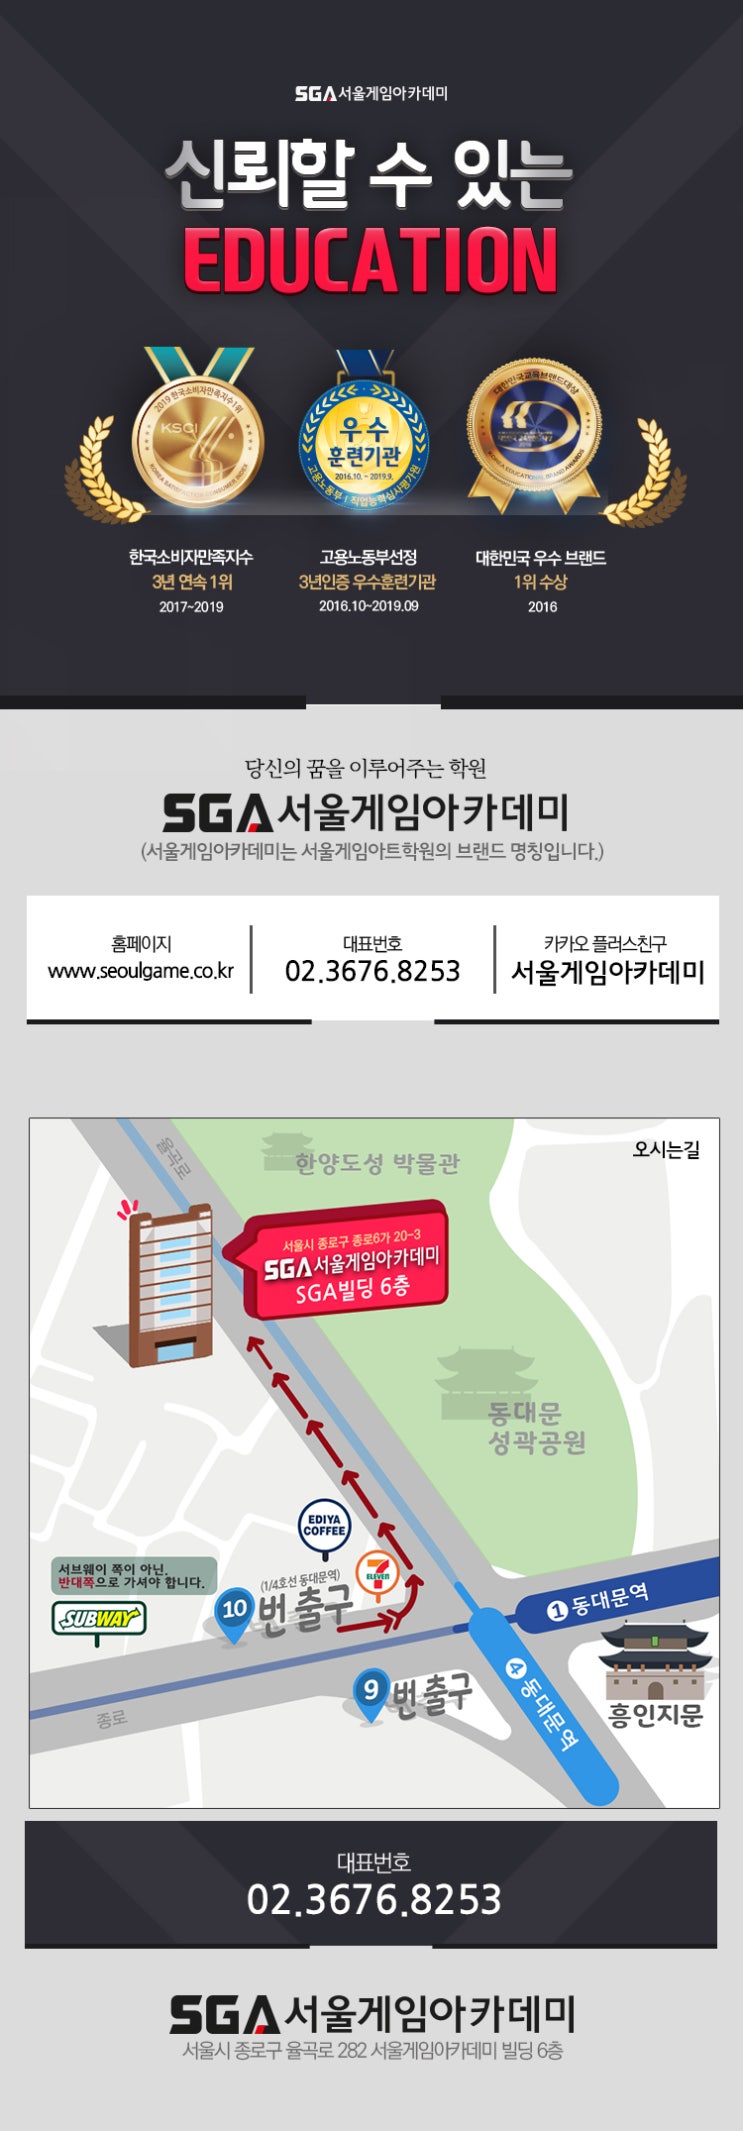 게임업계 취업의 꿈! SGA 서울아카데미에서 펼쳐보자!